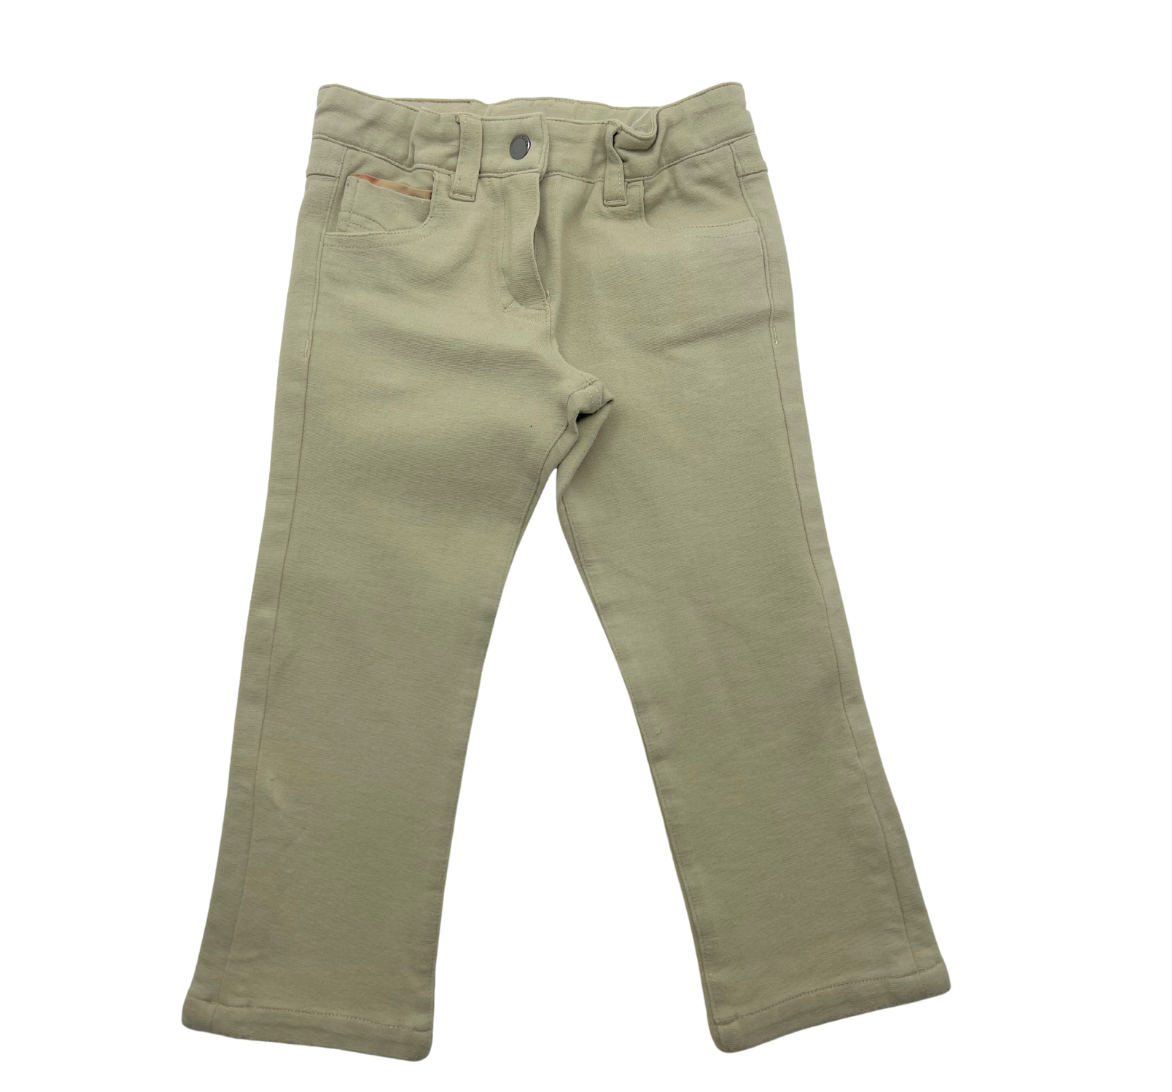 BURBERRY - Pantalon beige - 2 ans